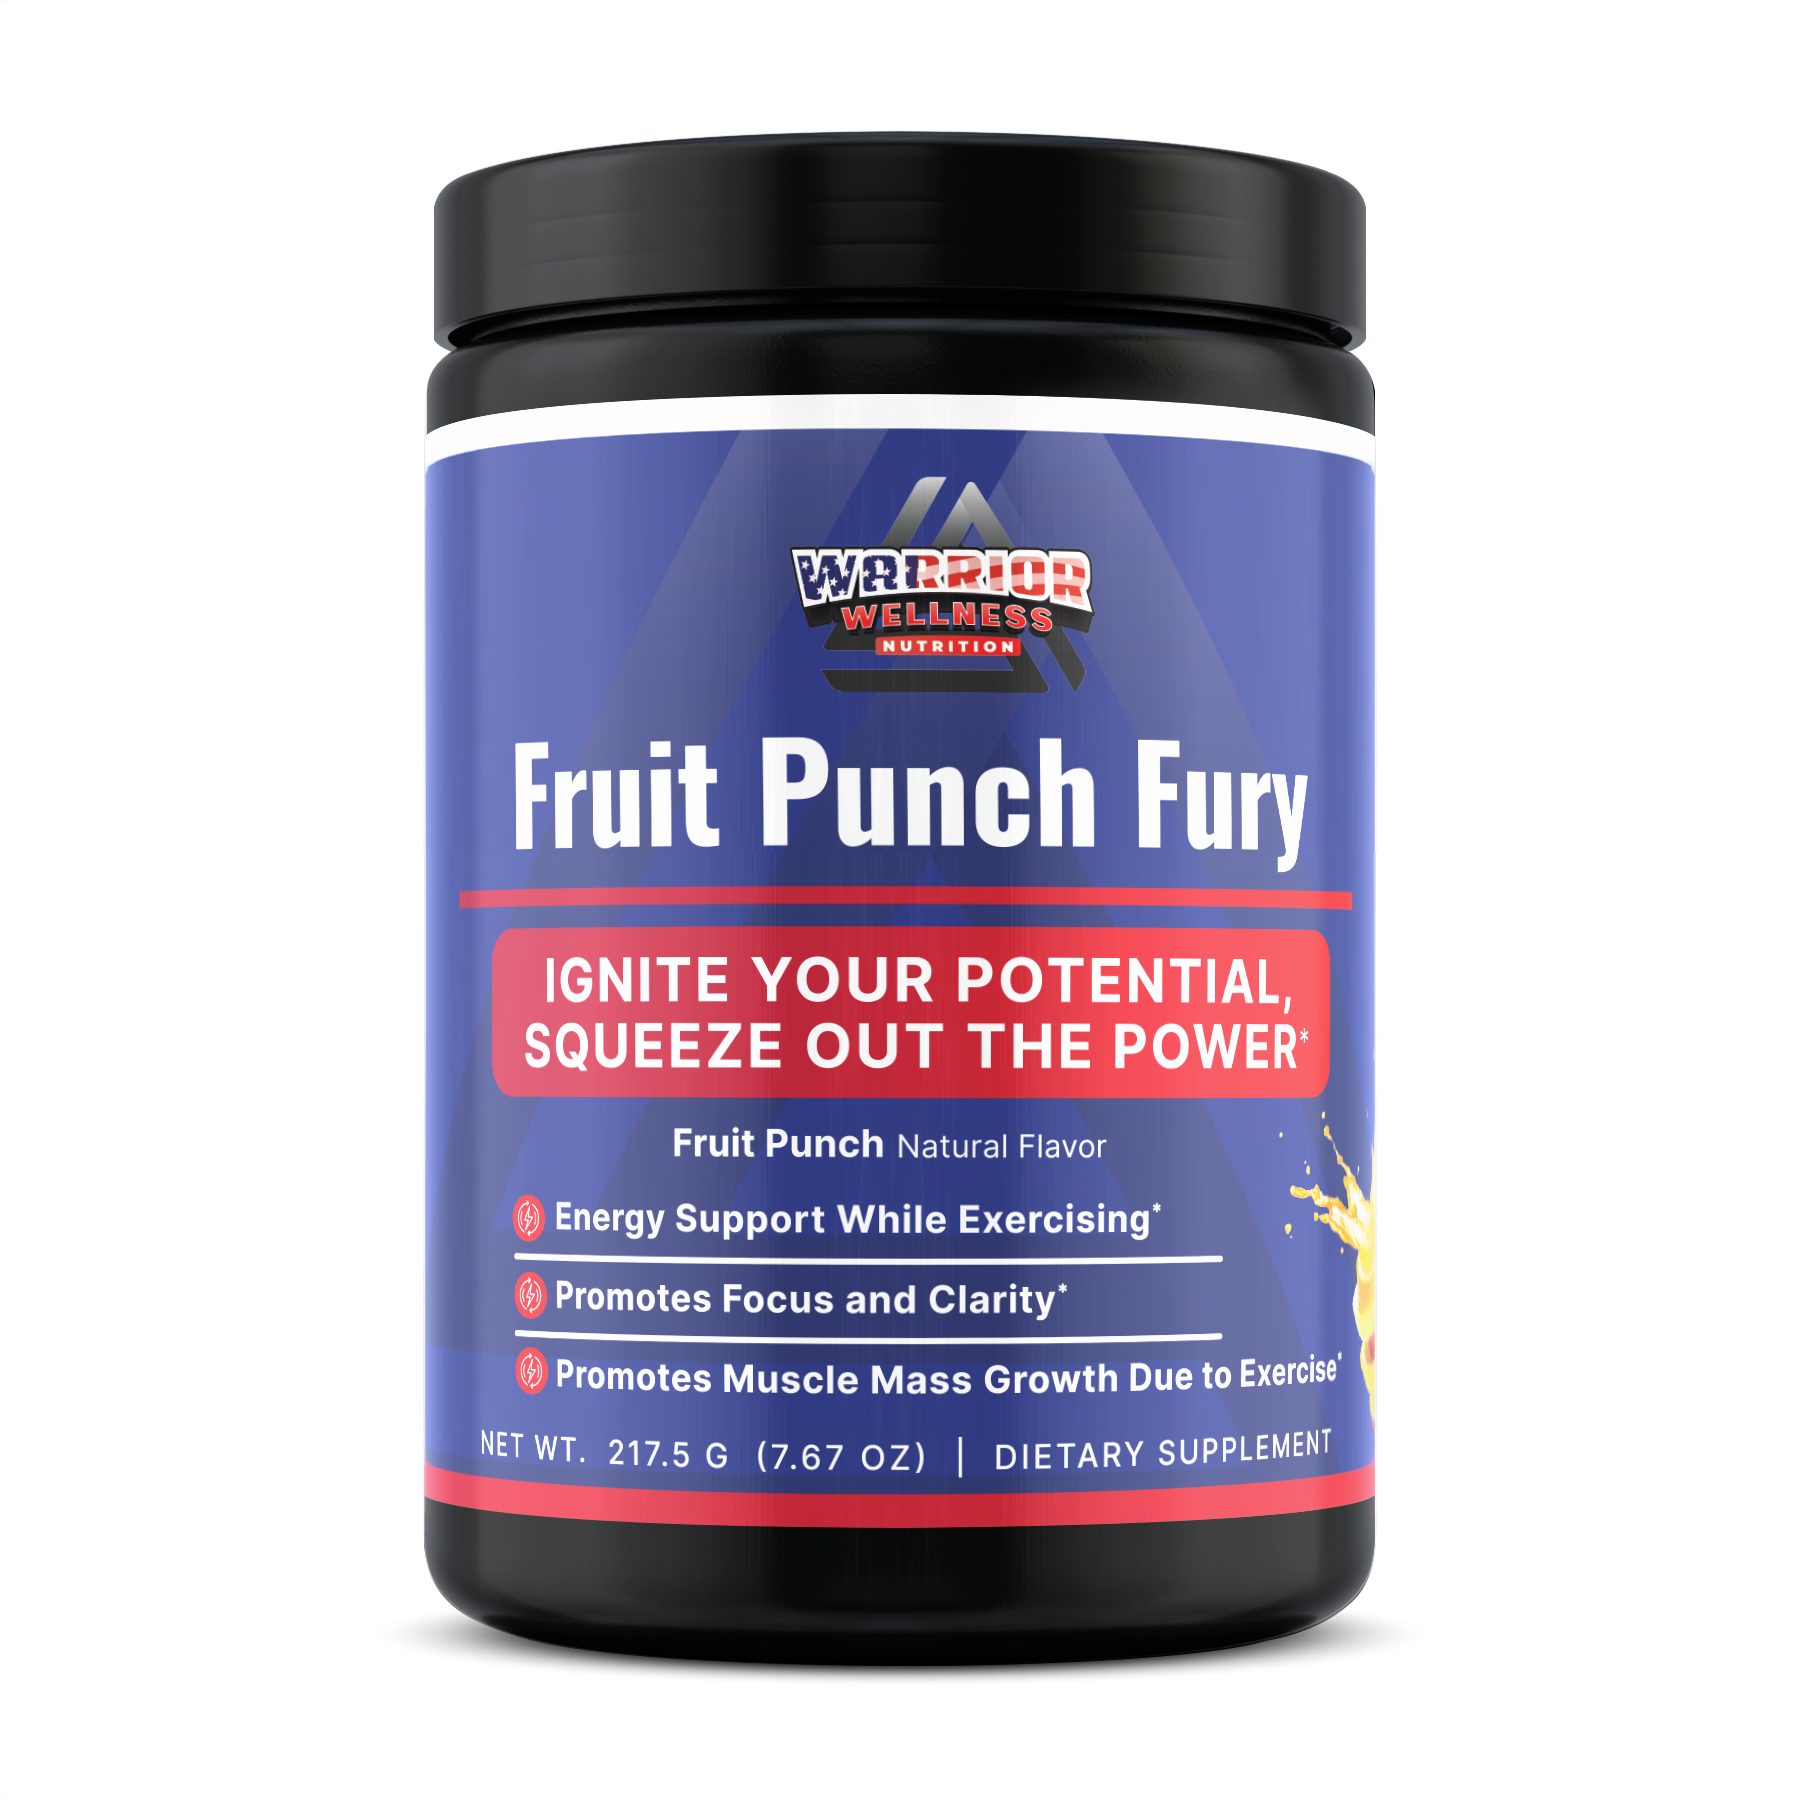 Fruit Punch Fury